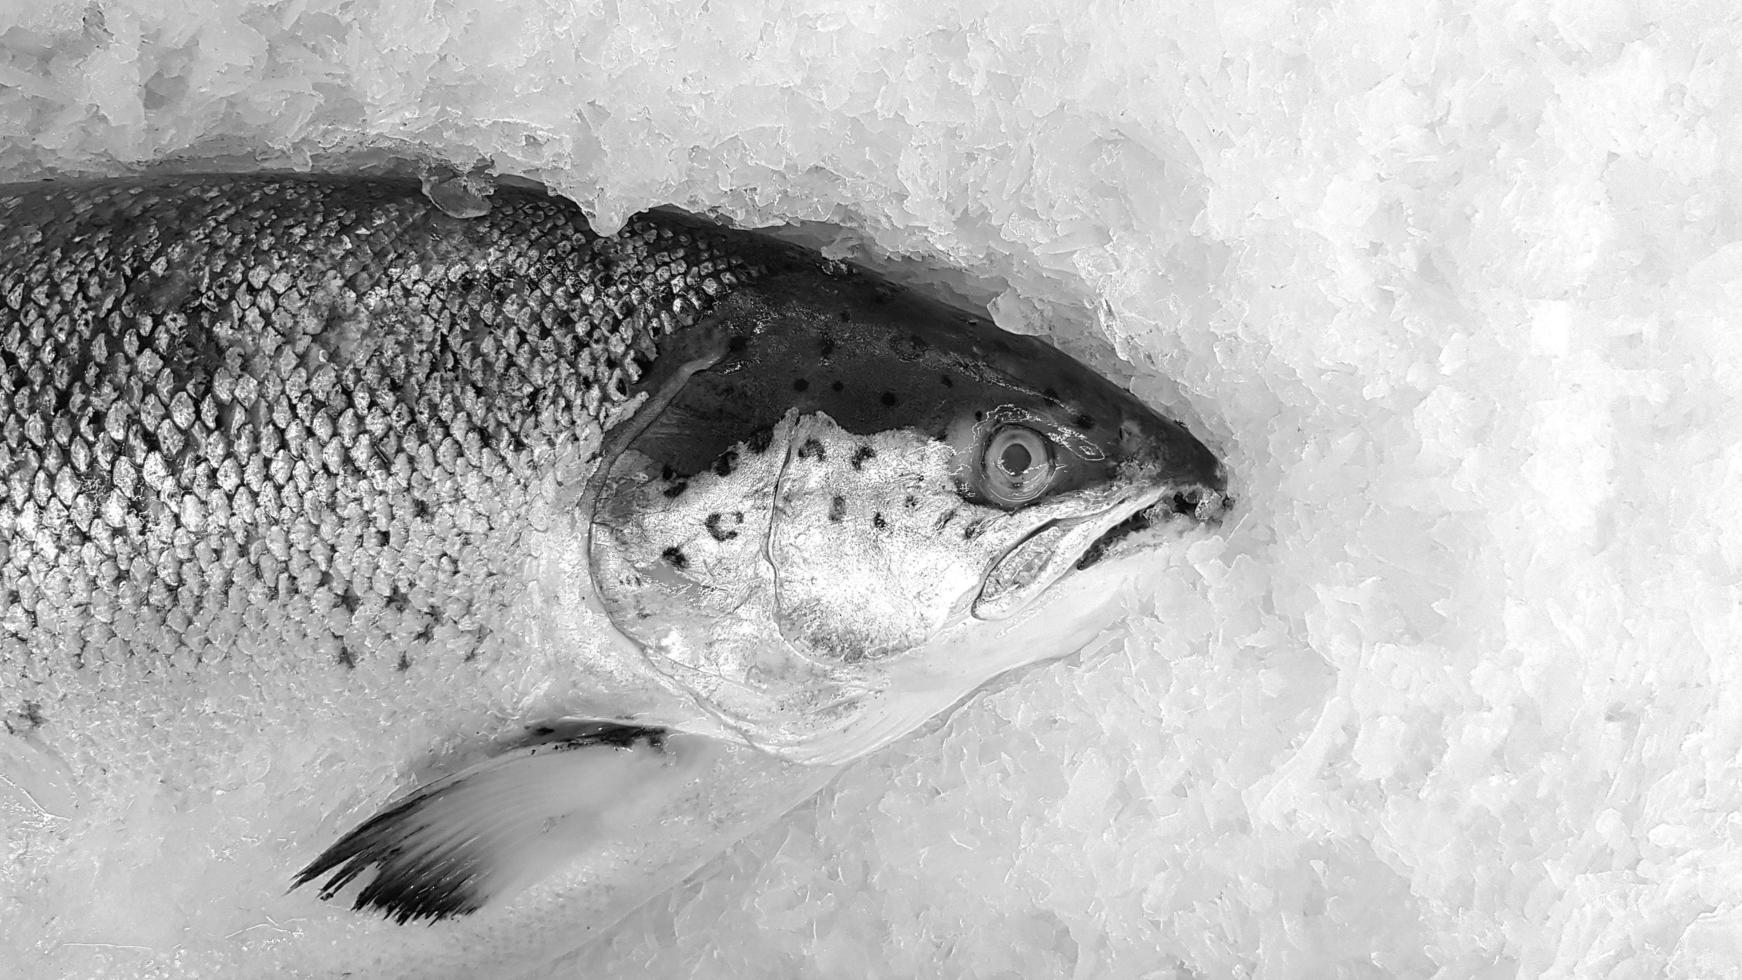 färsk lax frysa på is för försäljning på fisk marknadsföra eller mataffär med kopia Plats på rätt i svartvit eller svart och vit tona. djur, okokt mat och marin liv foto